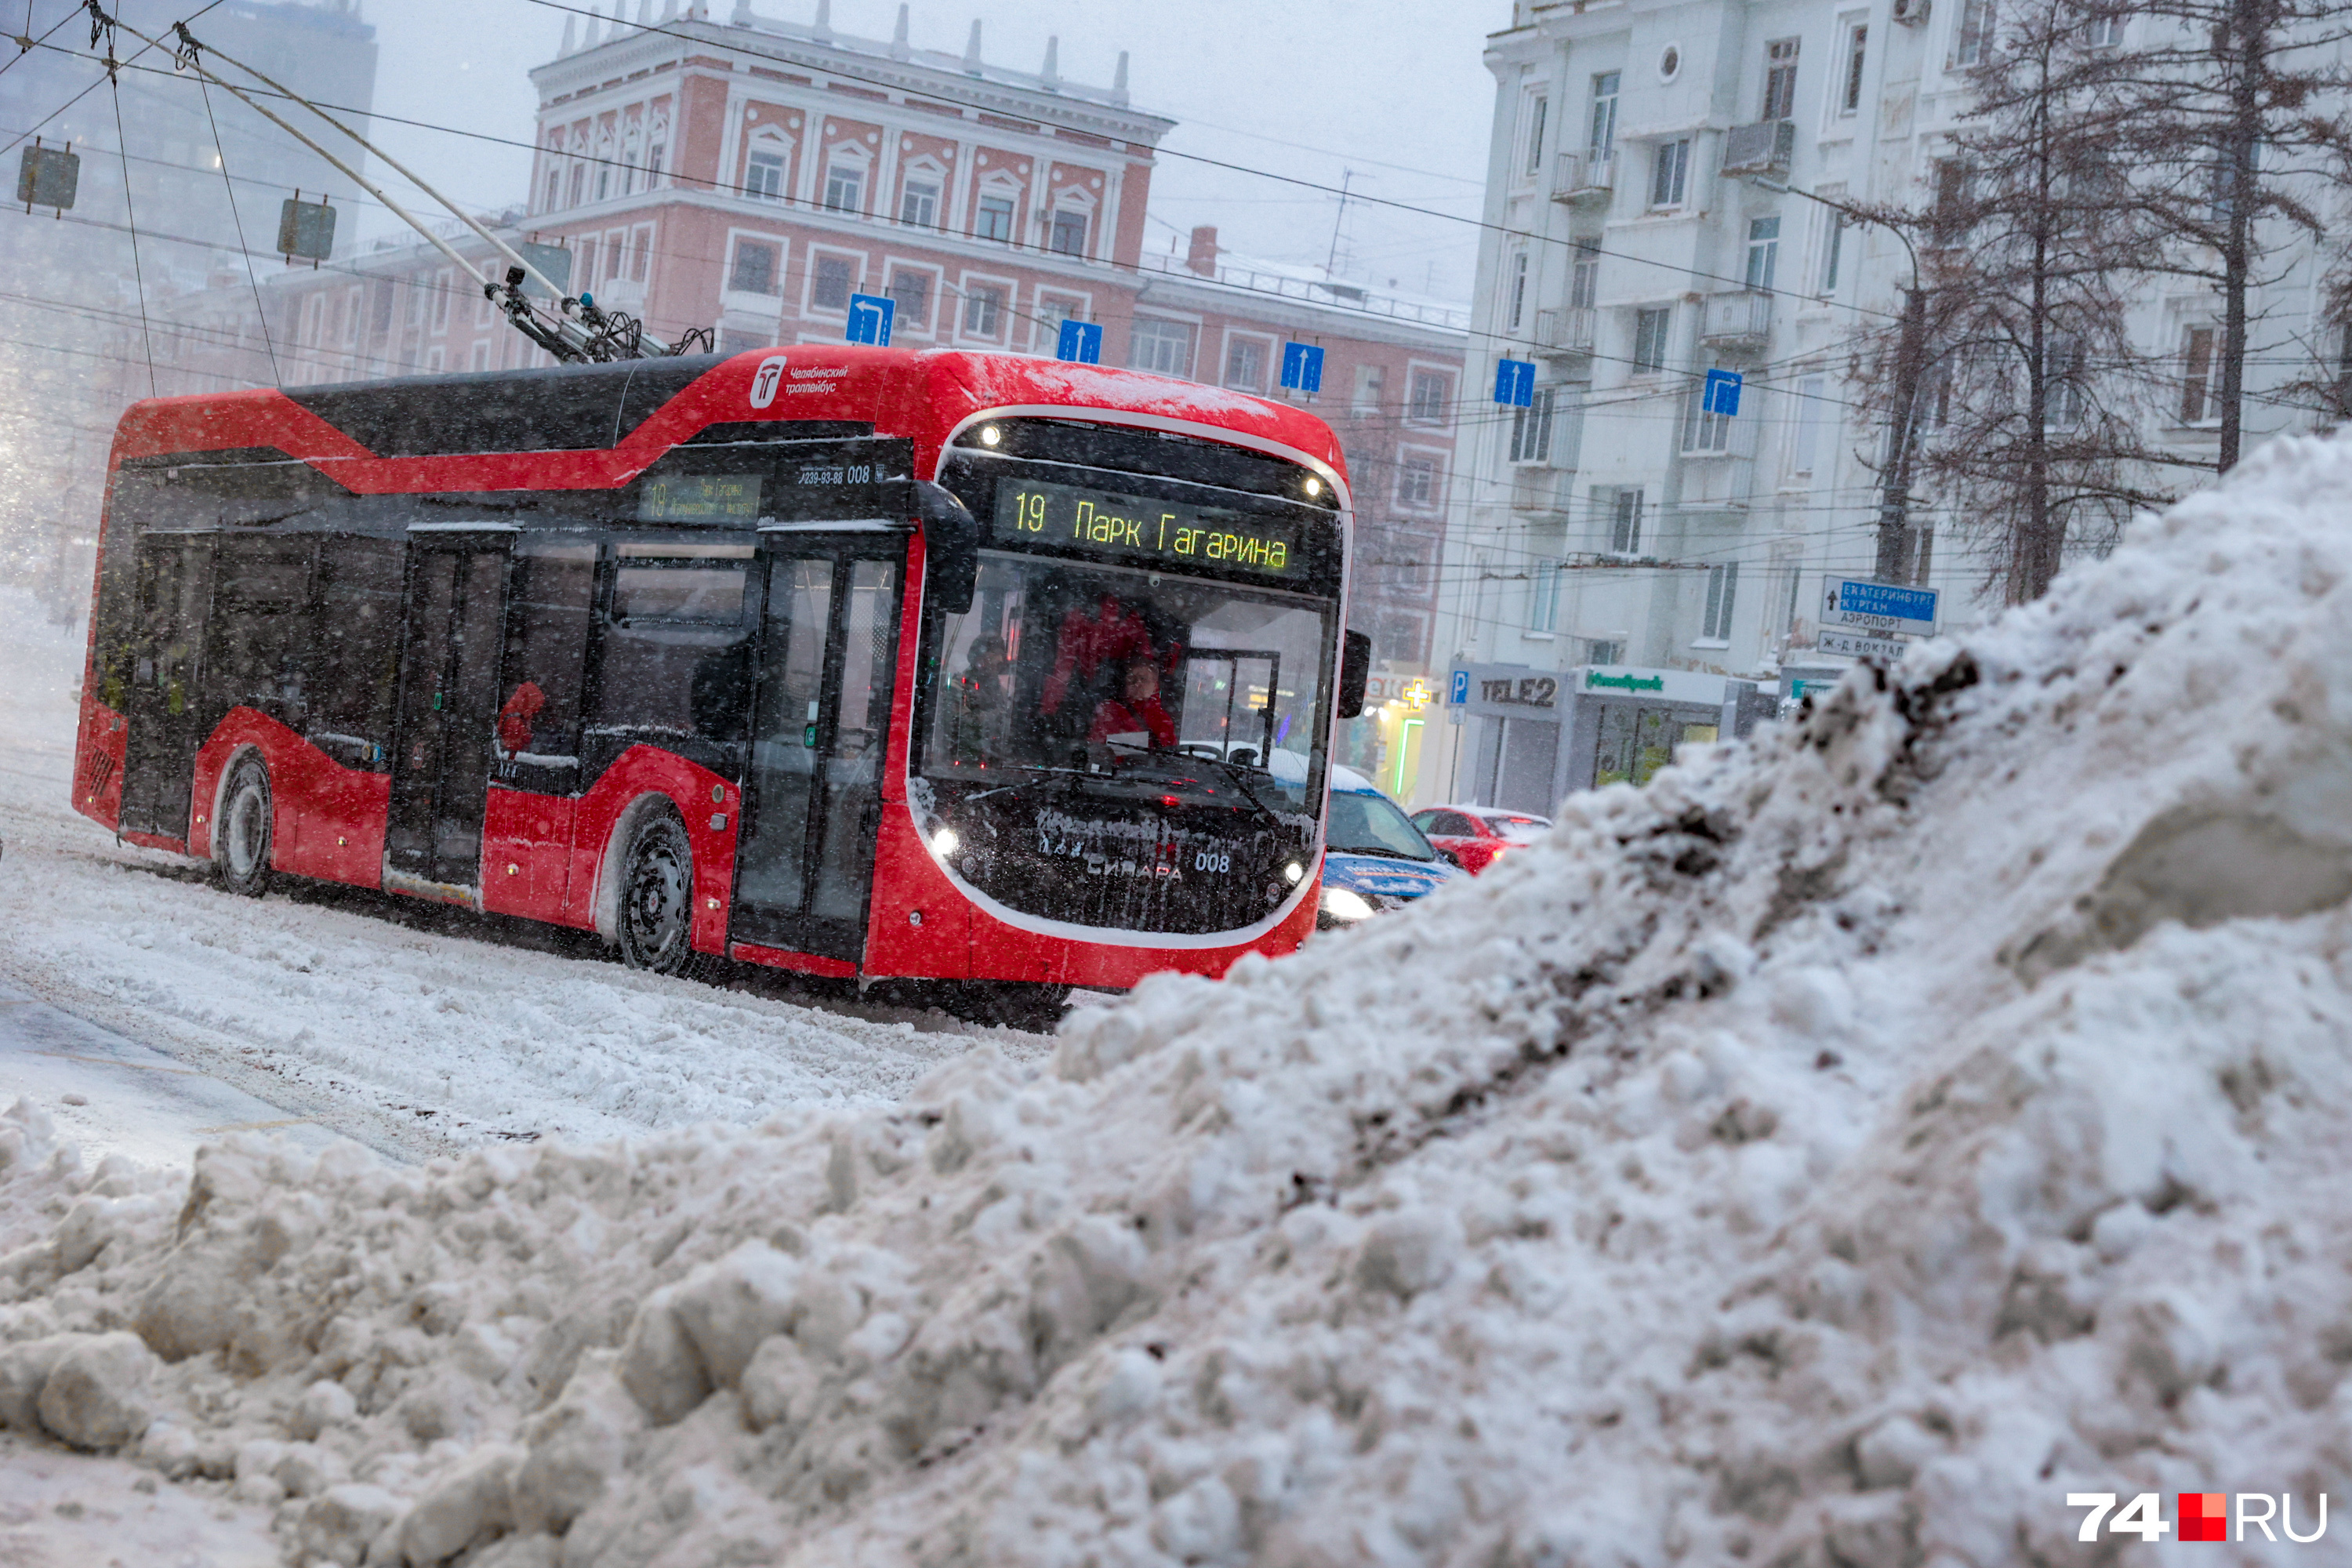 Общественный транспорт Челябинска: что сделали в 2023 году для его развития  — новые троллейбусы, метротрам, подорожание проезда, штрафы безбилетникам,  ремонт трамвайных путей - 9 января 2024 - 74.ru